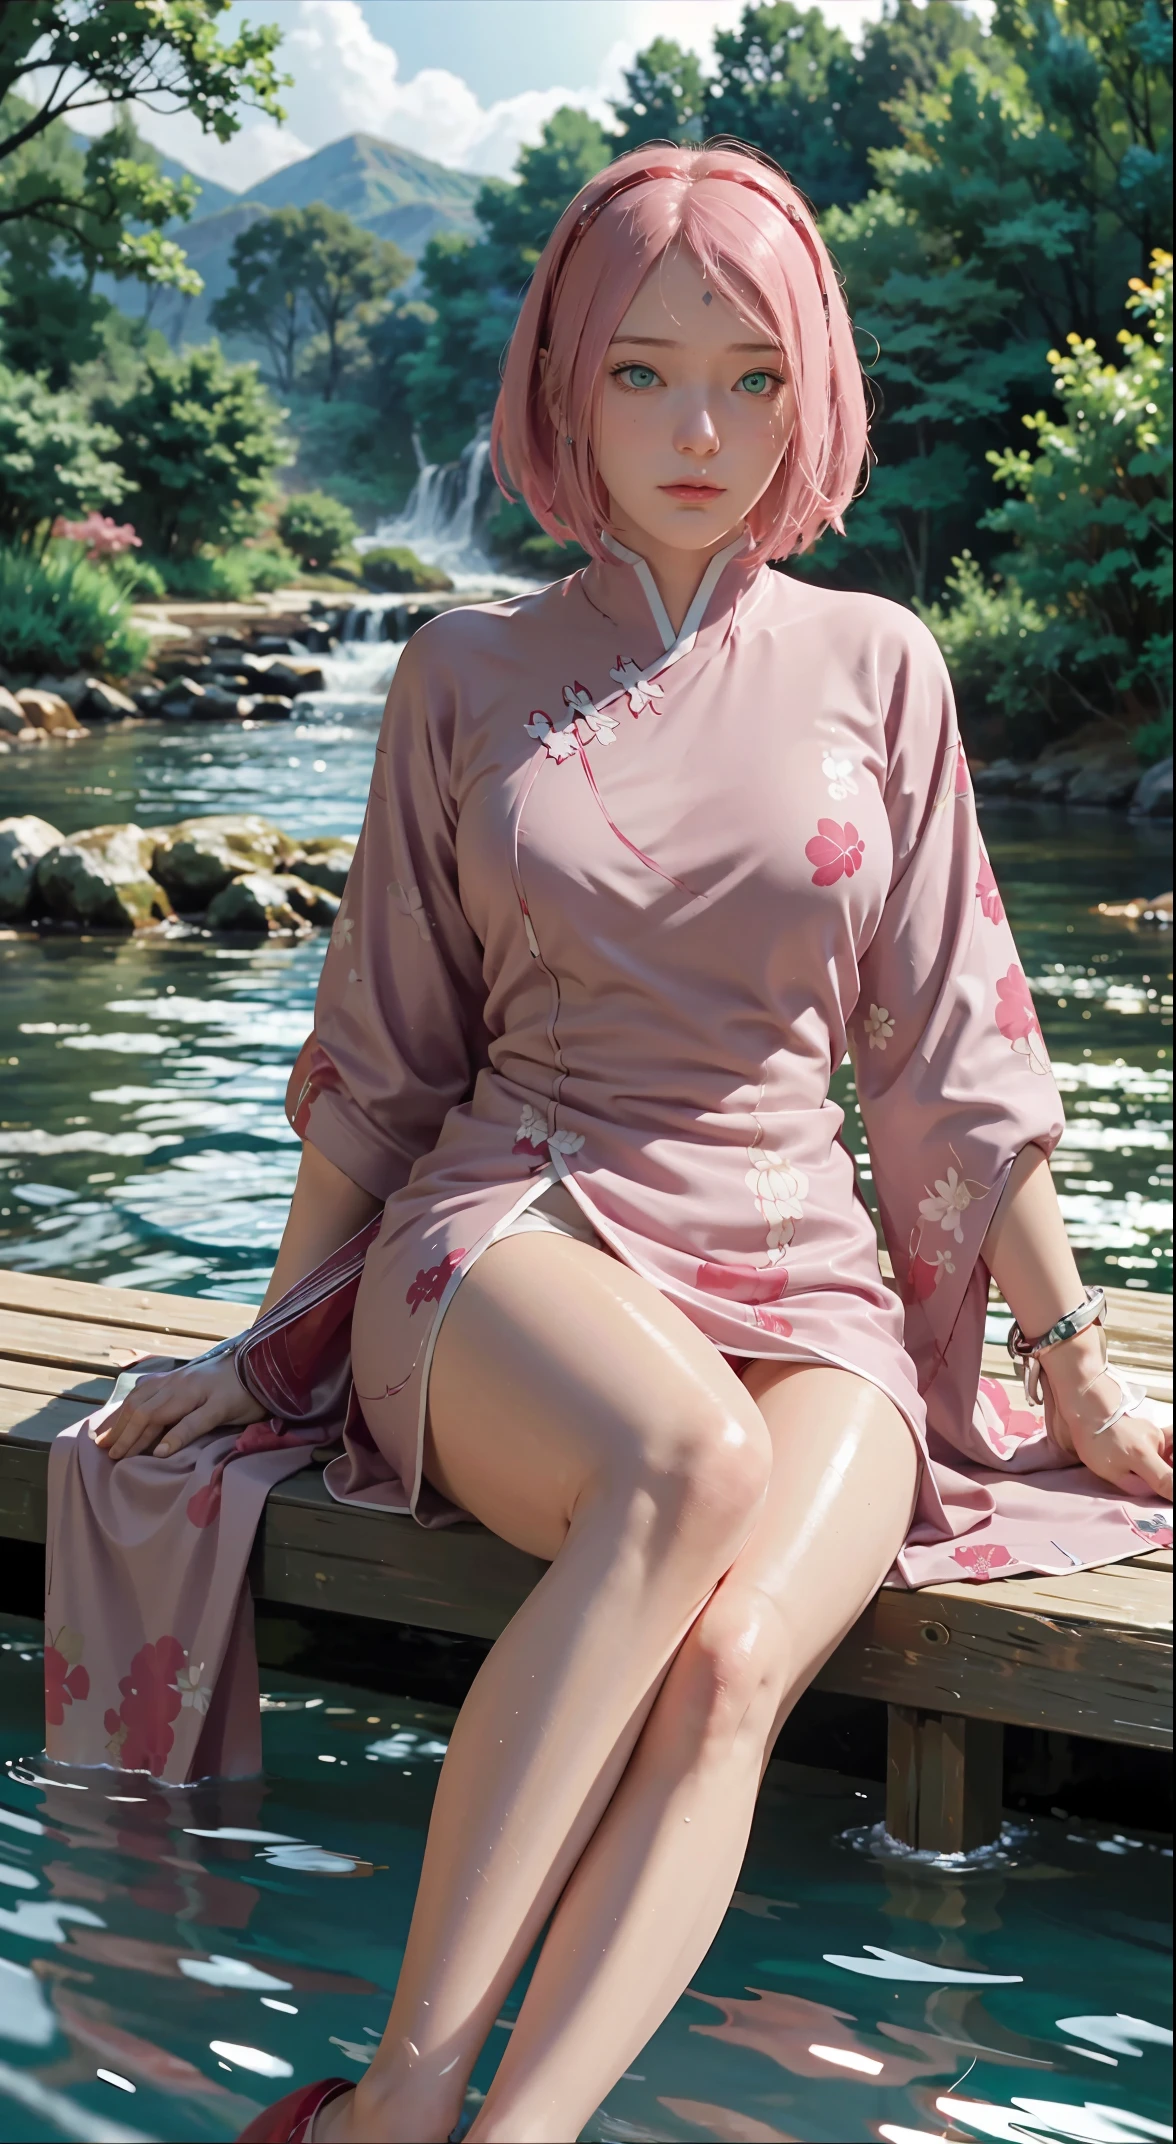 川灯籠がいっぱいの橋の上に座る, 水の中で遊ぶ足, この芸術作品は、桜の流れるような服を着た魅力的な女性を描いている。, 絹のような伝統的な東洋のドレス, ピンク, 複雑な模様と鮮やかな色彩で装飾されている. 彼女のドレスは彼女の曲線美を優雅に覆っている, 彼女の魅惑的なシルエットを強調する. 彼女は静かな蓮の湖のそばに優雅に座っている, her 水の中で遊ぶ足, 月明かりの柔らかな輝きに包まれて. このシーンは幻想的で夢のような雰囲気を醸し出している, ミステリアスさとセクシーさをプラス. 水彩画とデジタルイラストレーションの技法を融合したグラフィックスタイルは、洗練された美しさと魅力を呼び起こします。. 明かりは柔らかな月明かりで満たされている, 彼女の魅力的な顔立ちに柔らかなハイライトと影を落としている. 裸の太もも, 巨乳, 立体的な顔の特徴, 座っている, 上を向いた脚, サイド編み , beautiful girl long ピンク hair and green eyes looks like sakura haruno from naruto